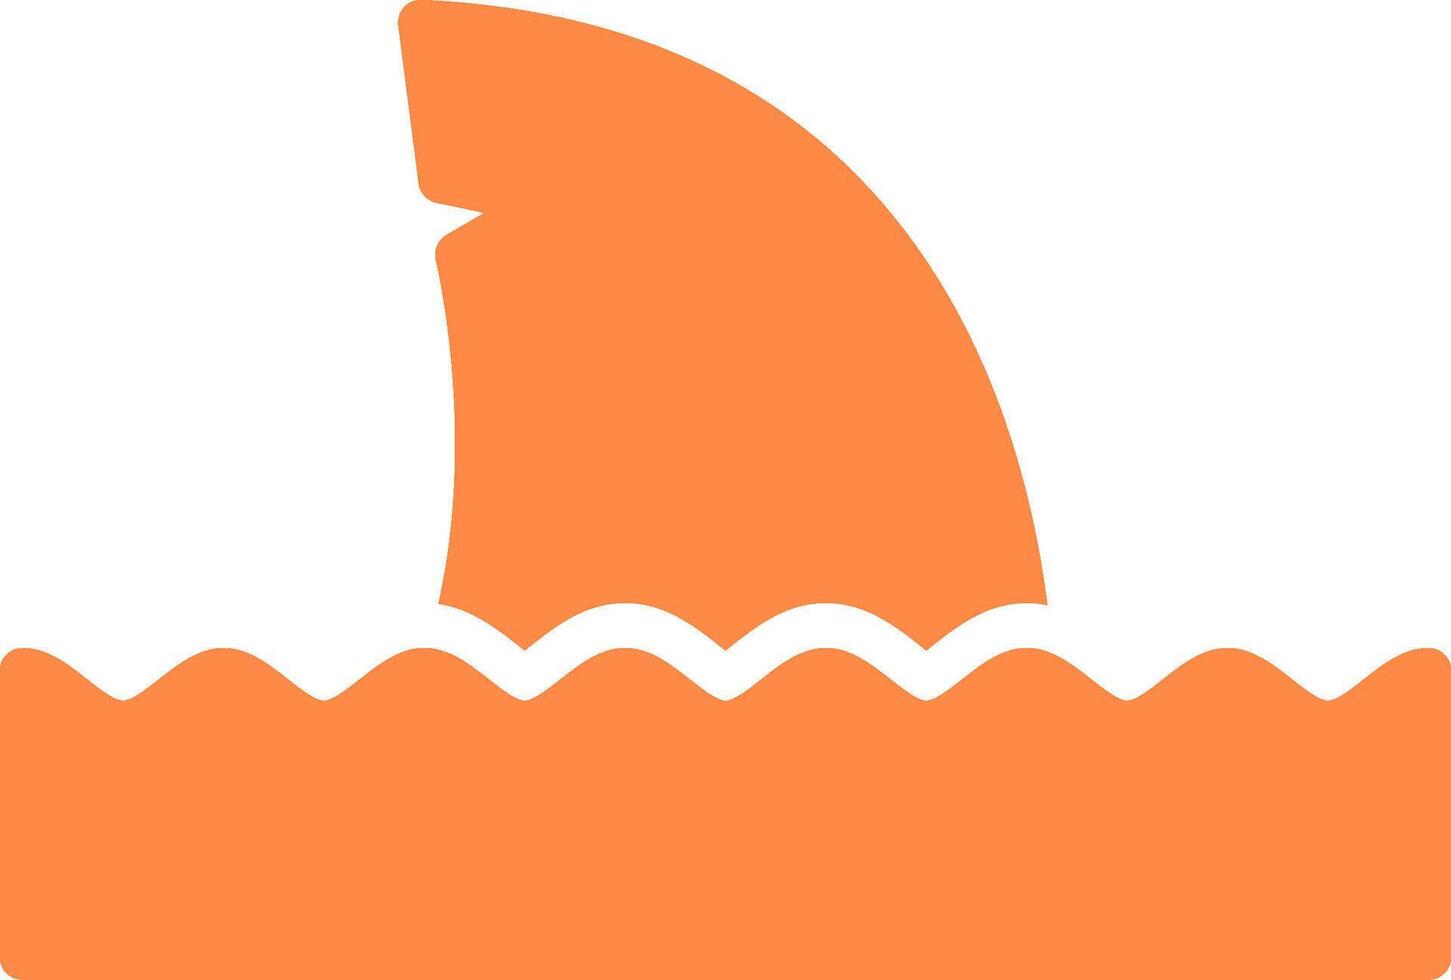 Shark Creative Icon Design vector